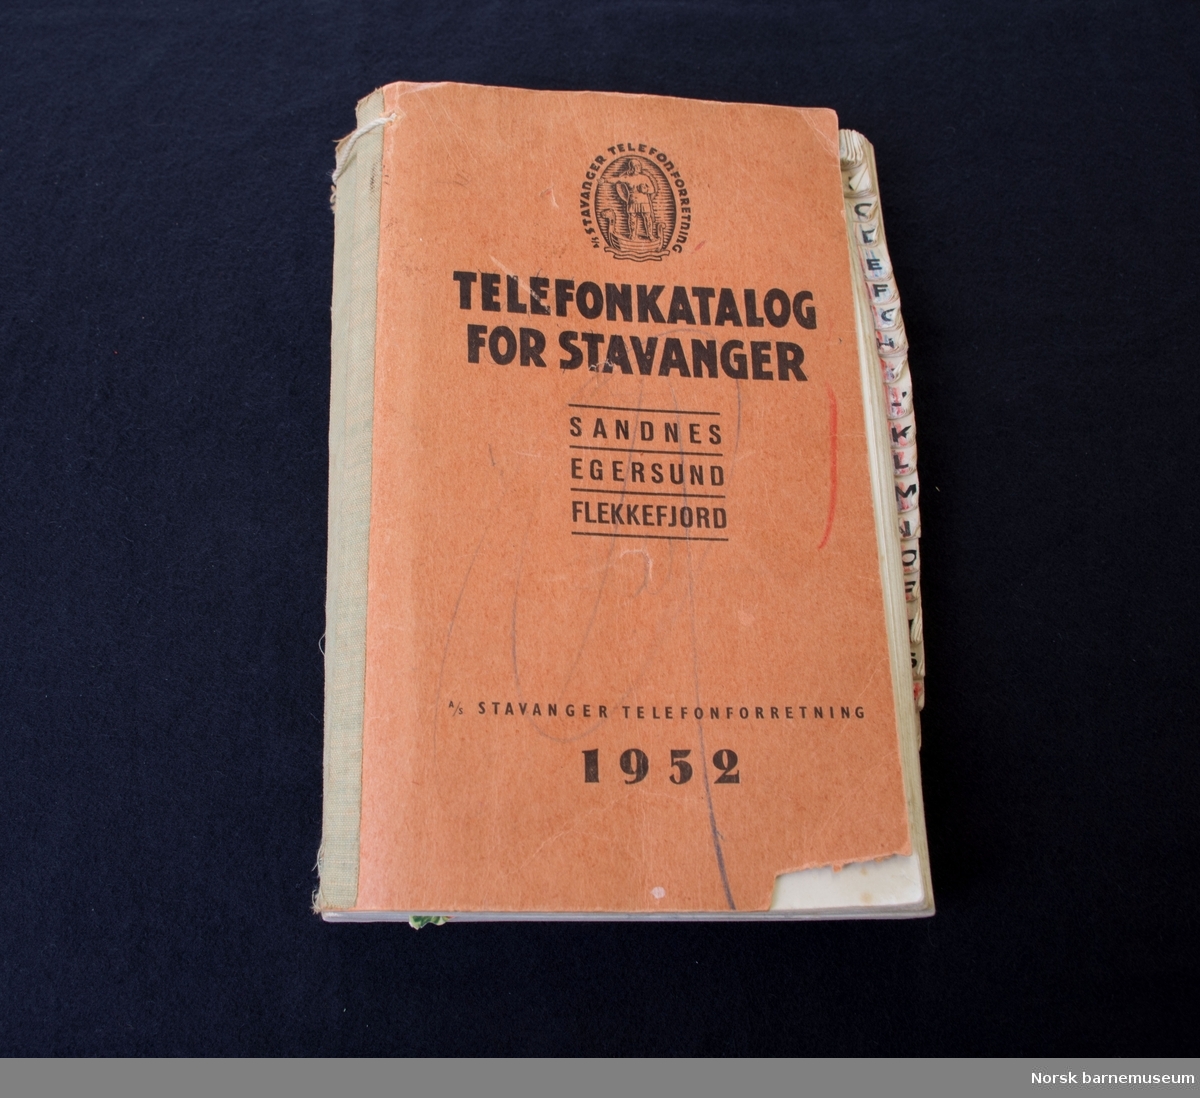 Telefonkatalog for Stavanger, brukt som samlealbum for glansbilder. 
En del glansbilder som ligger løst i tillegg.